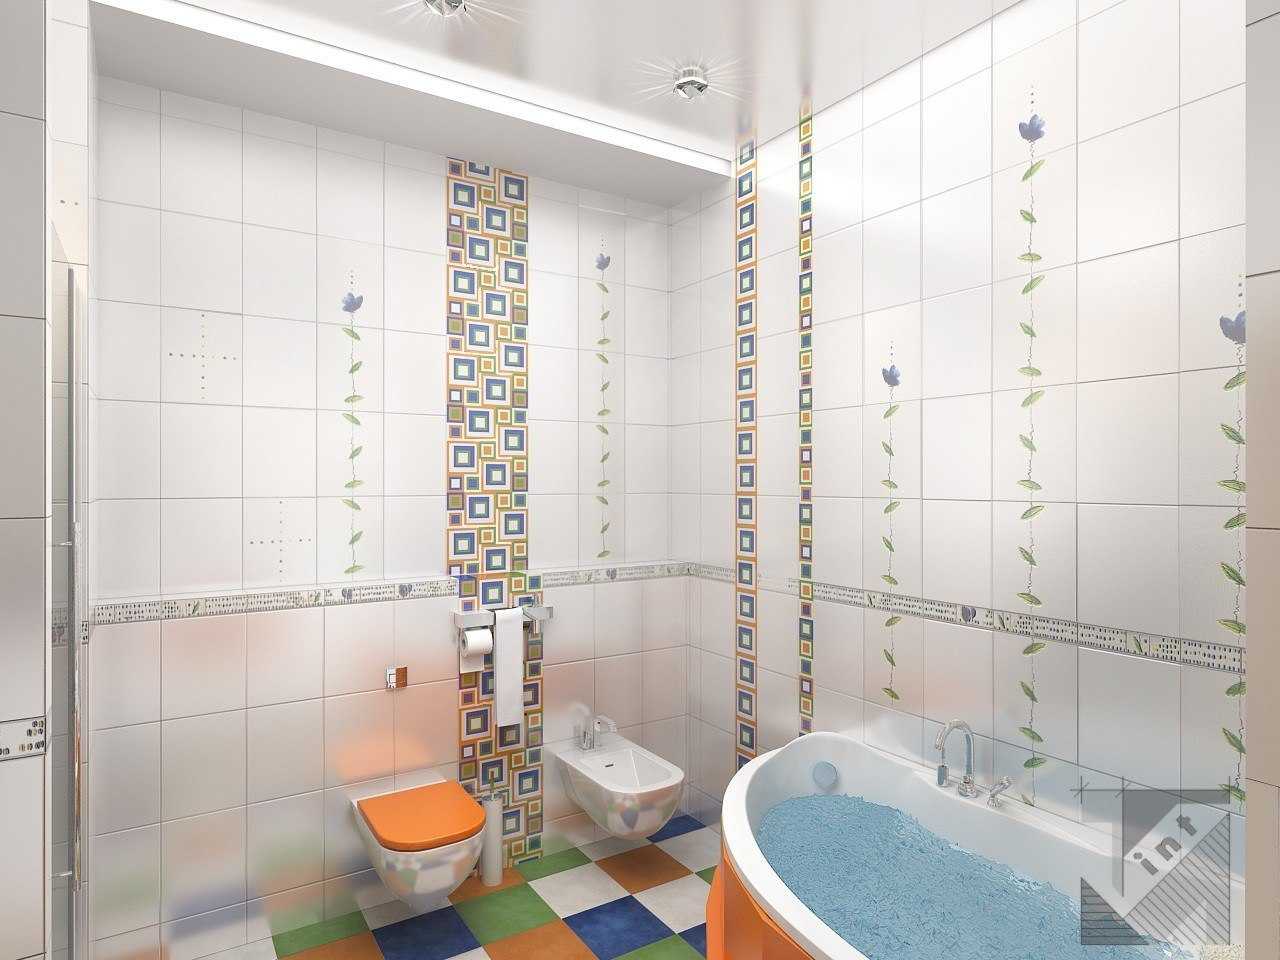 Отделка ванной мозаикой: выбор дизайна и как правильно оформить своими руками